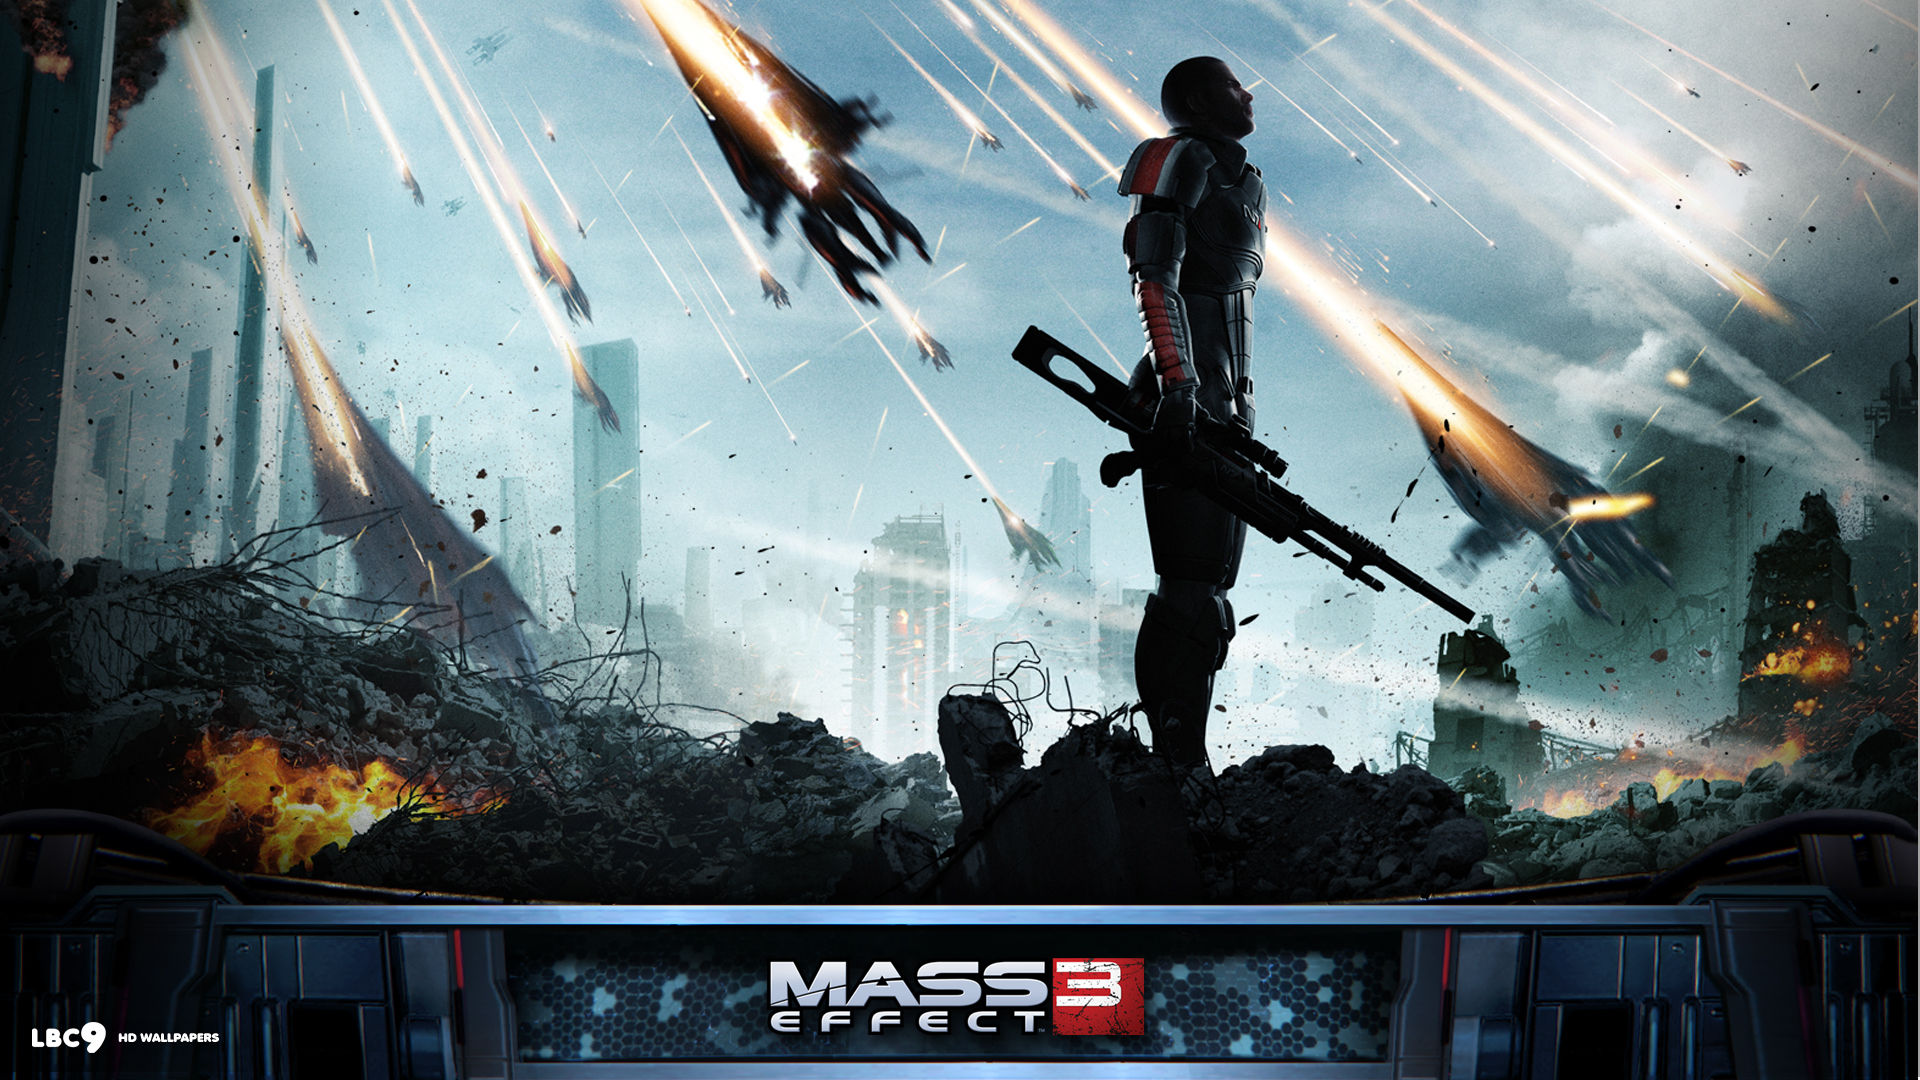 Mass Effect 3 Art Hd Wallpaper - Mass Effect 3 Invasion , HD Wallpaper & Backgrounds